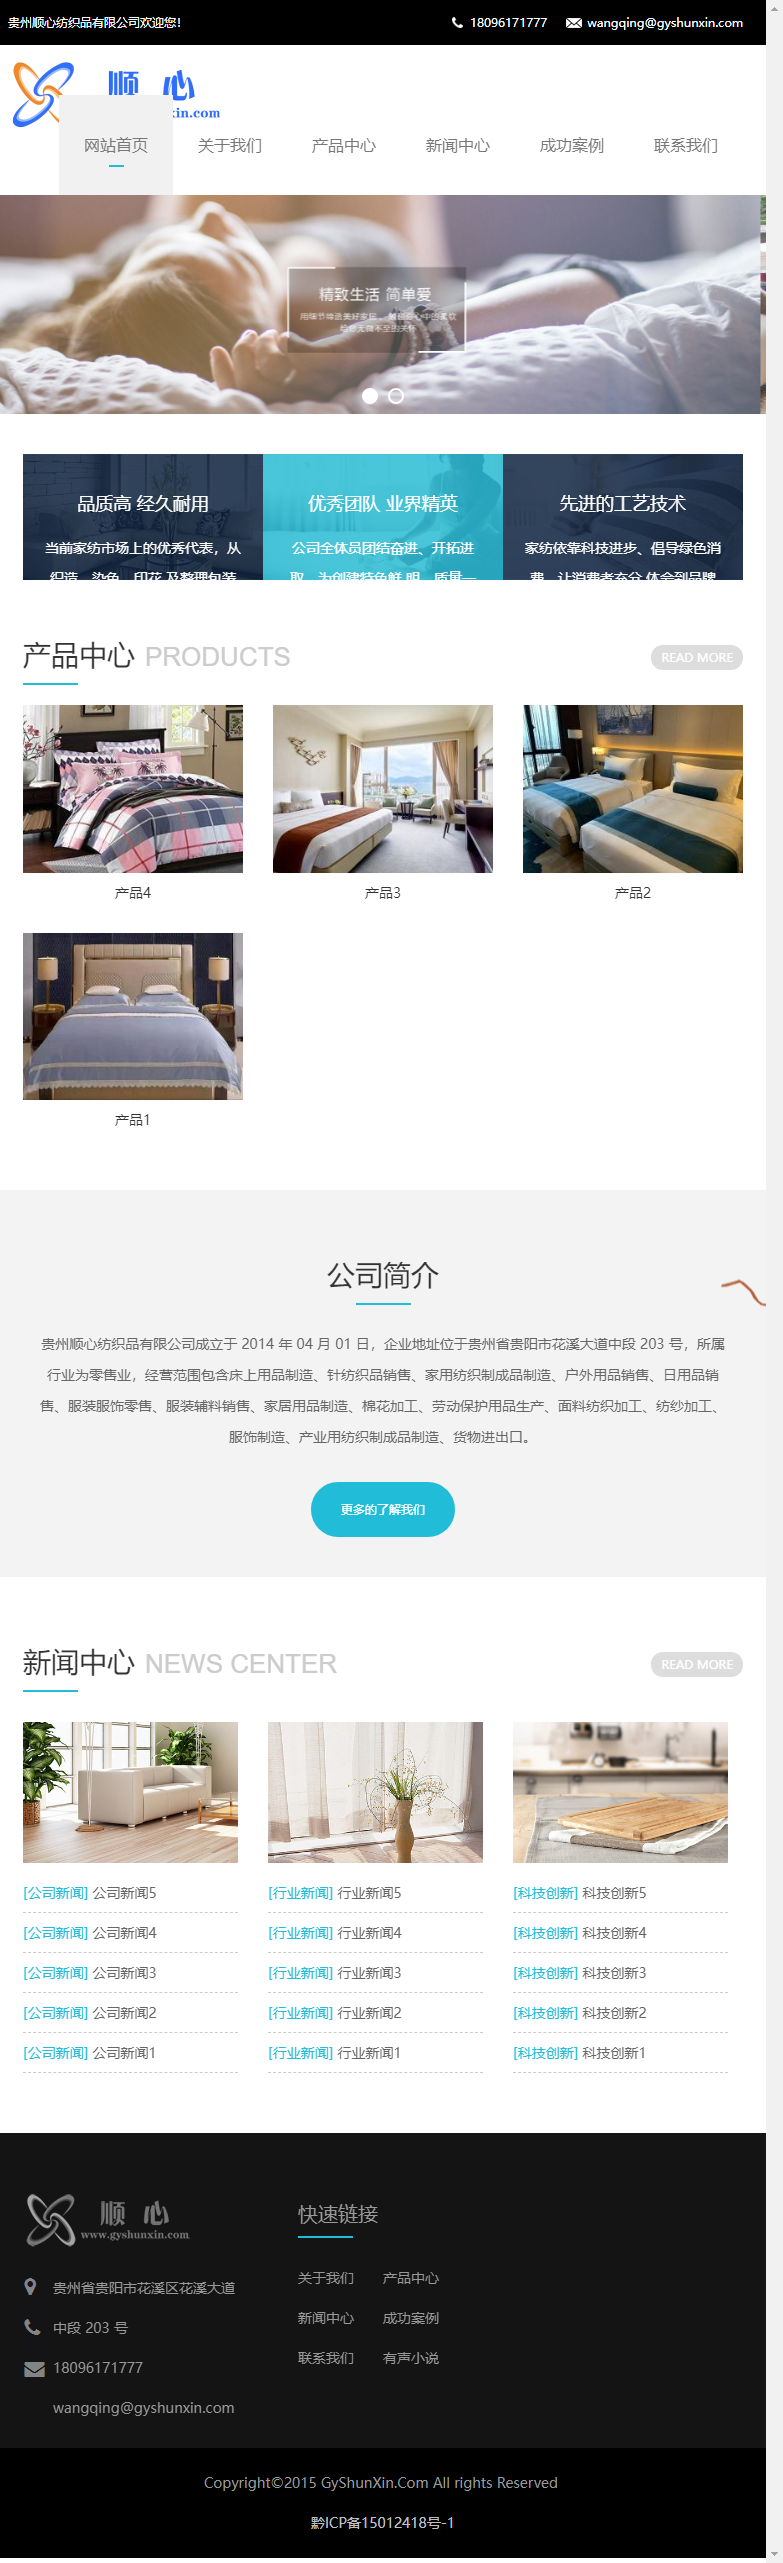 贵州顺心纺织品有限公司网站案例